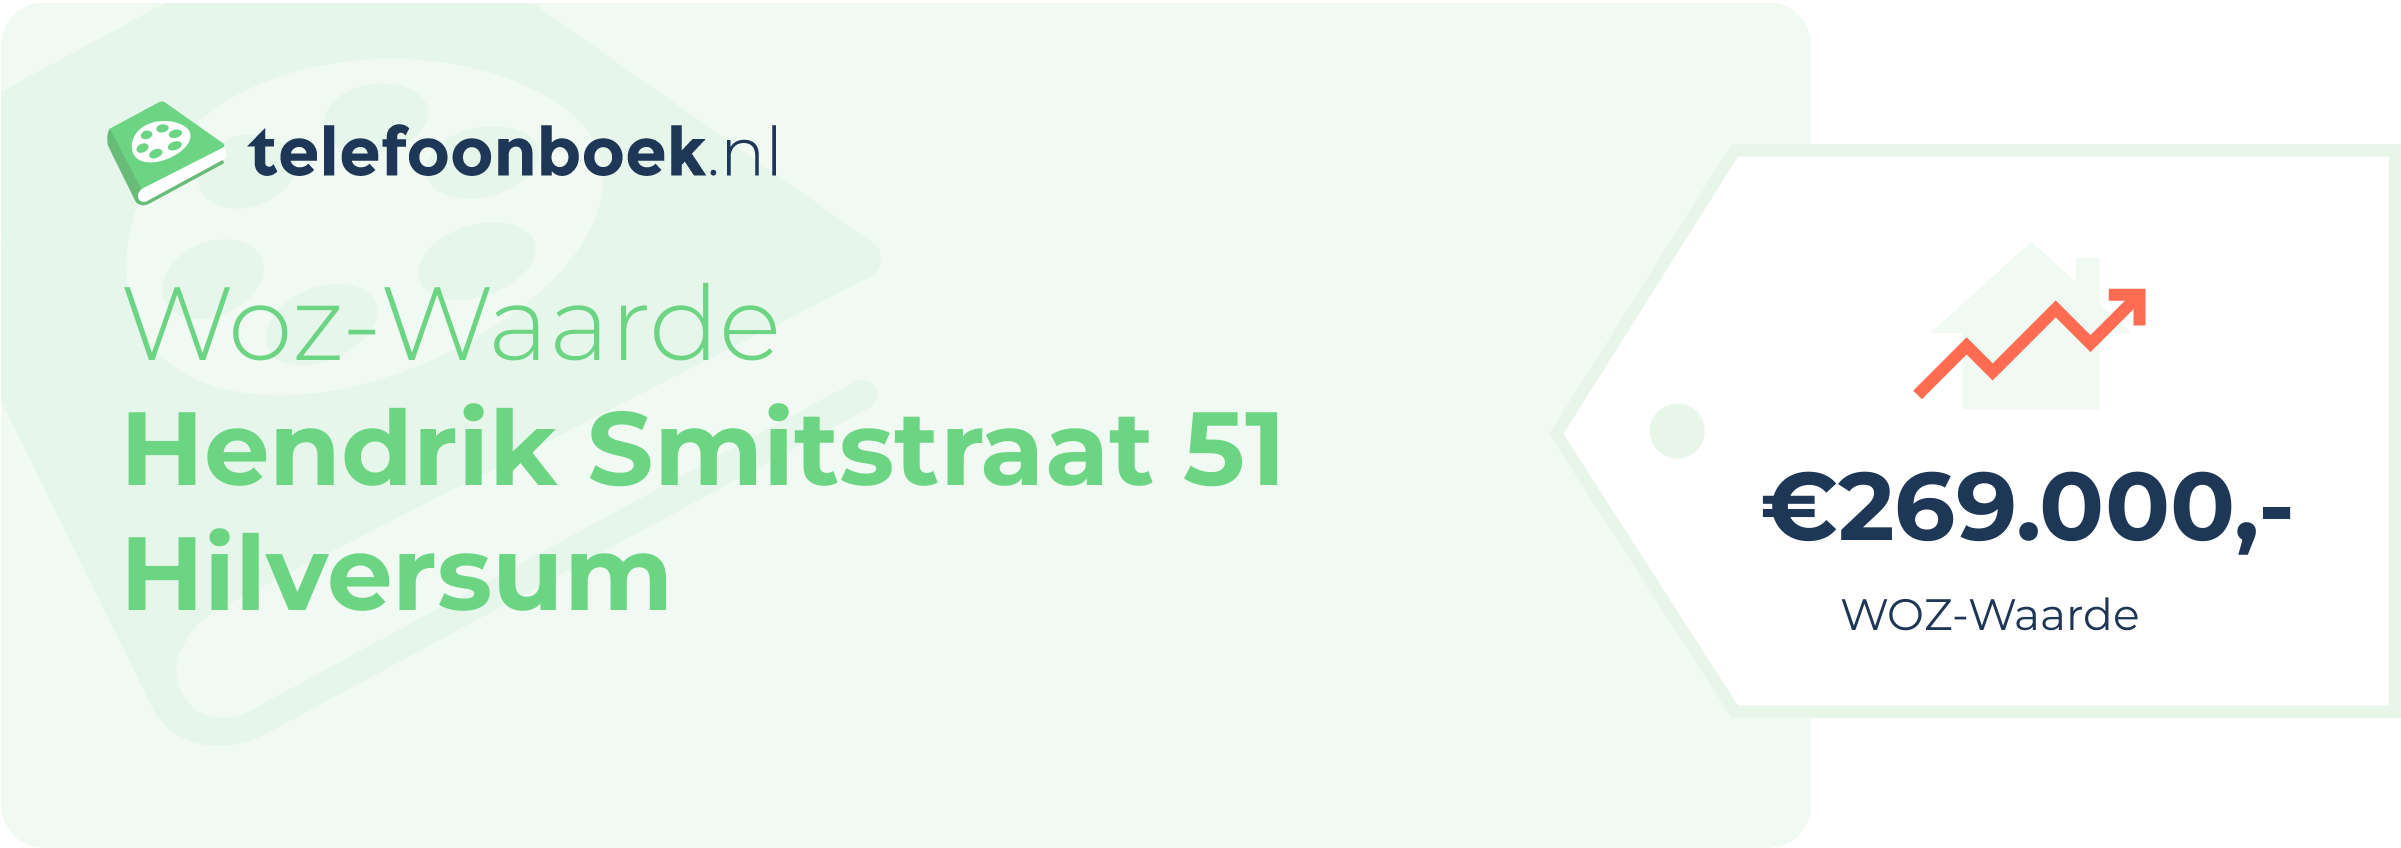 WOZ-waarde Hendrik Smitstraat 51 Hilversum